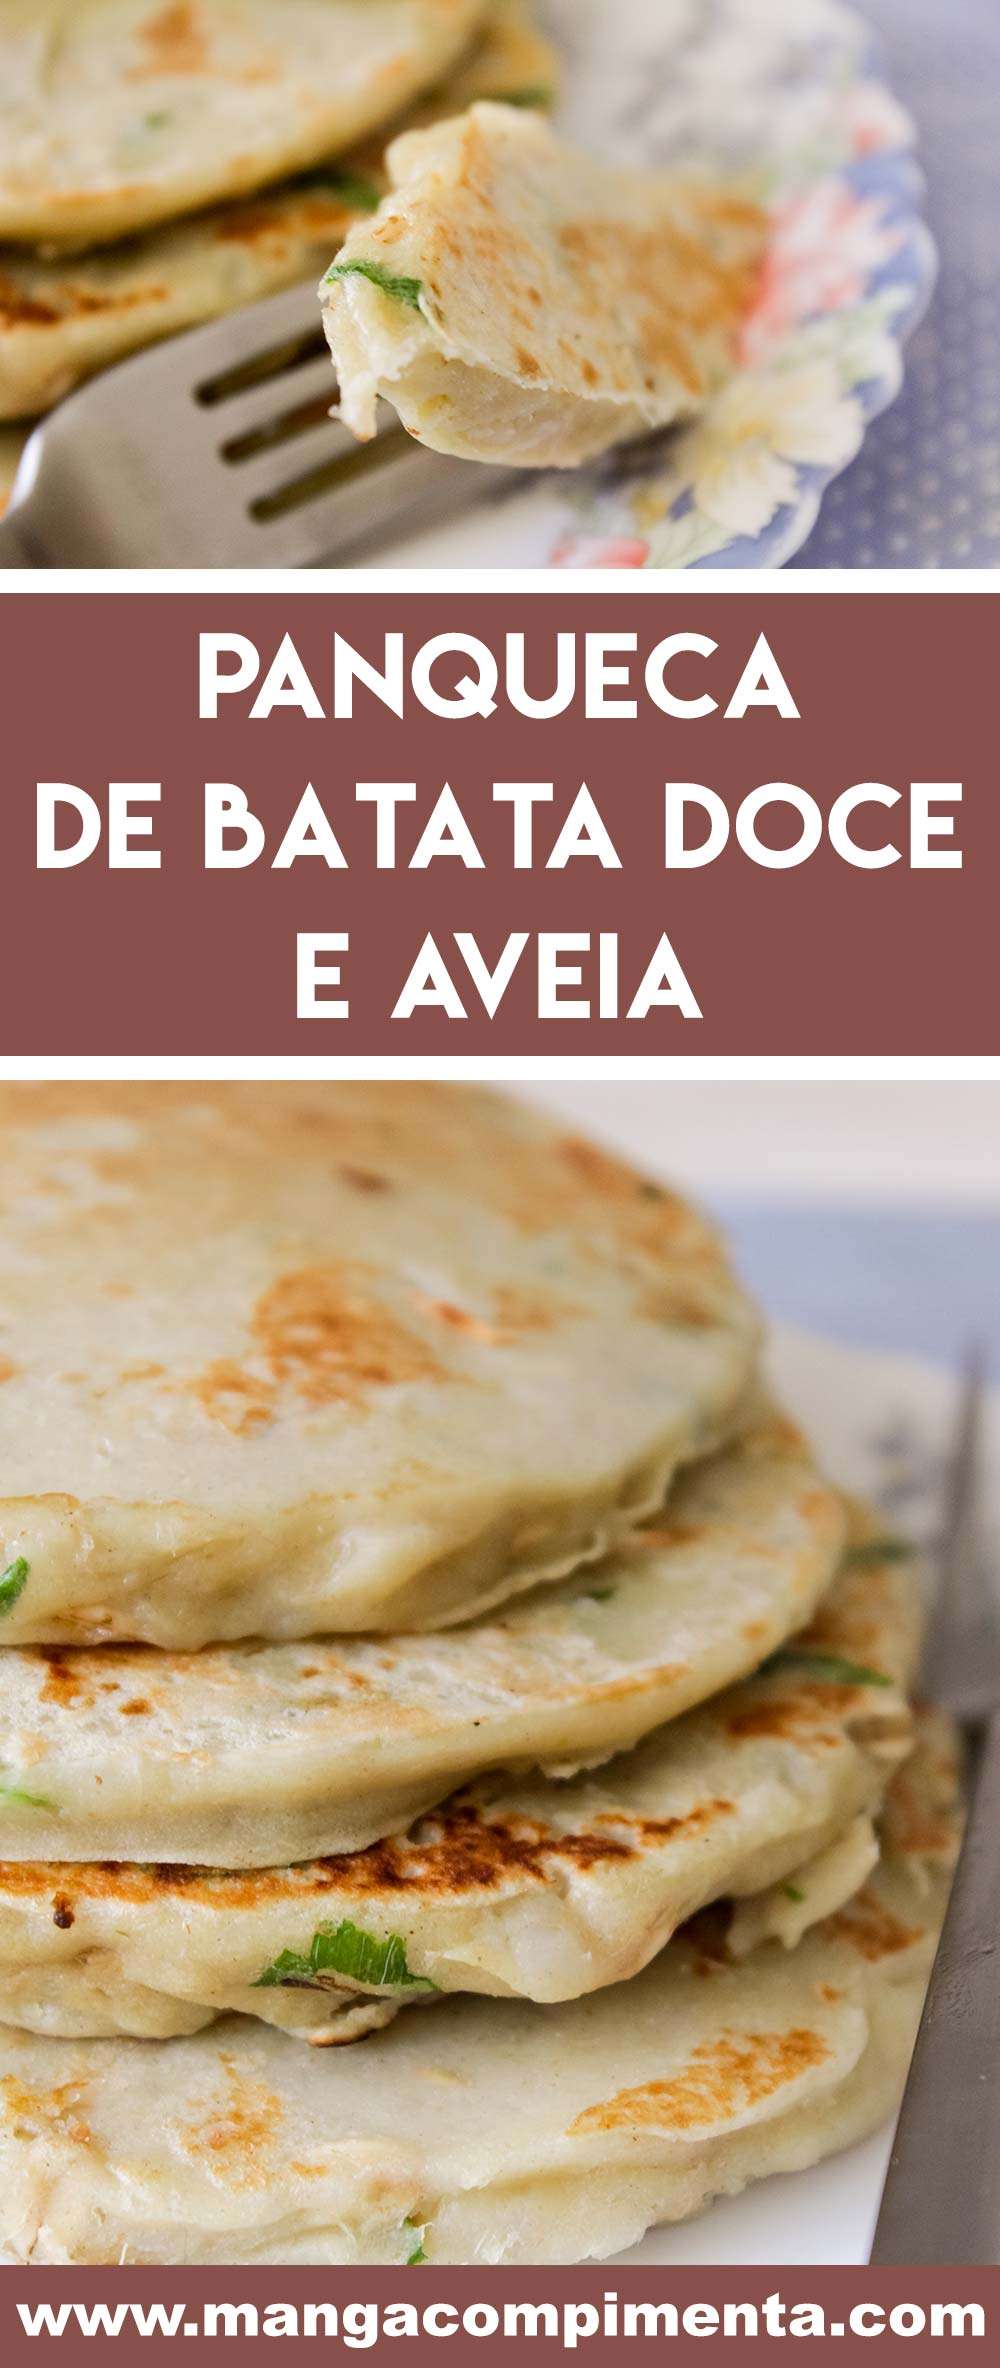 Panqueca de Batata Doce e Aveia - prepare um prato leve e diferente para o almoço!